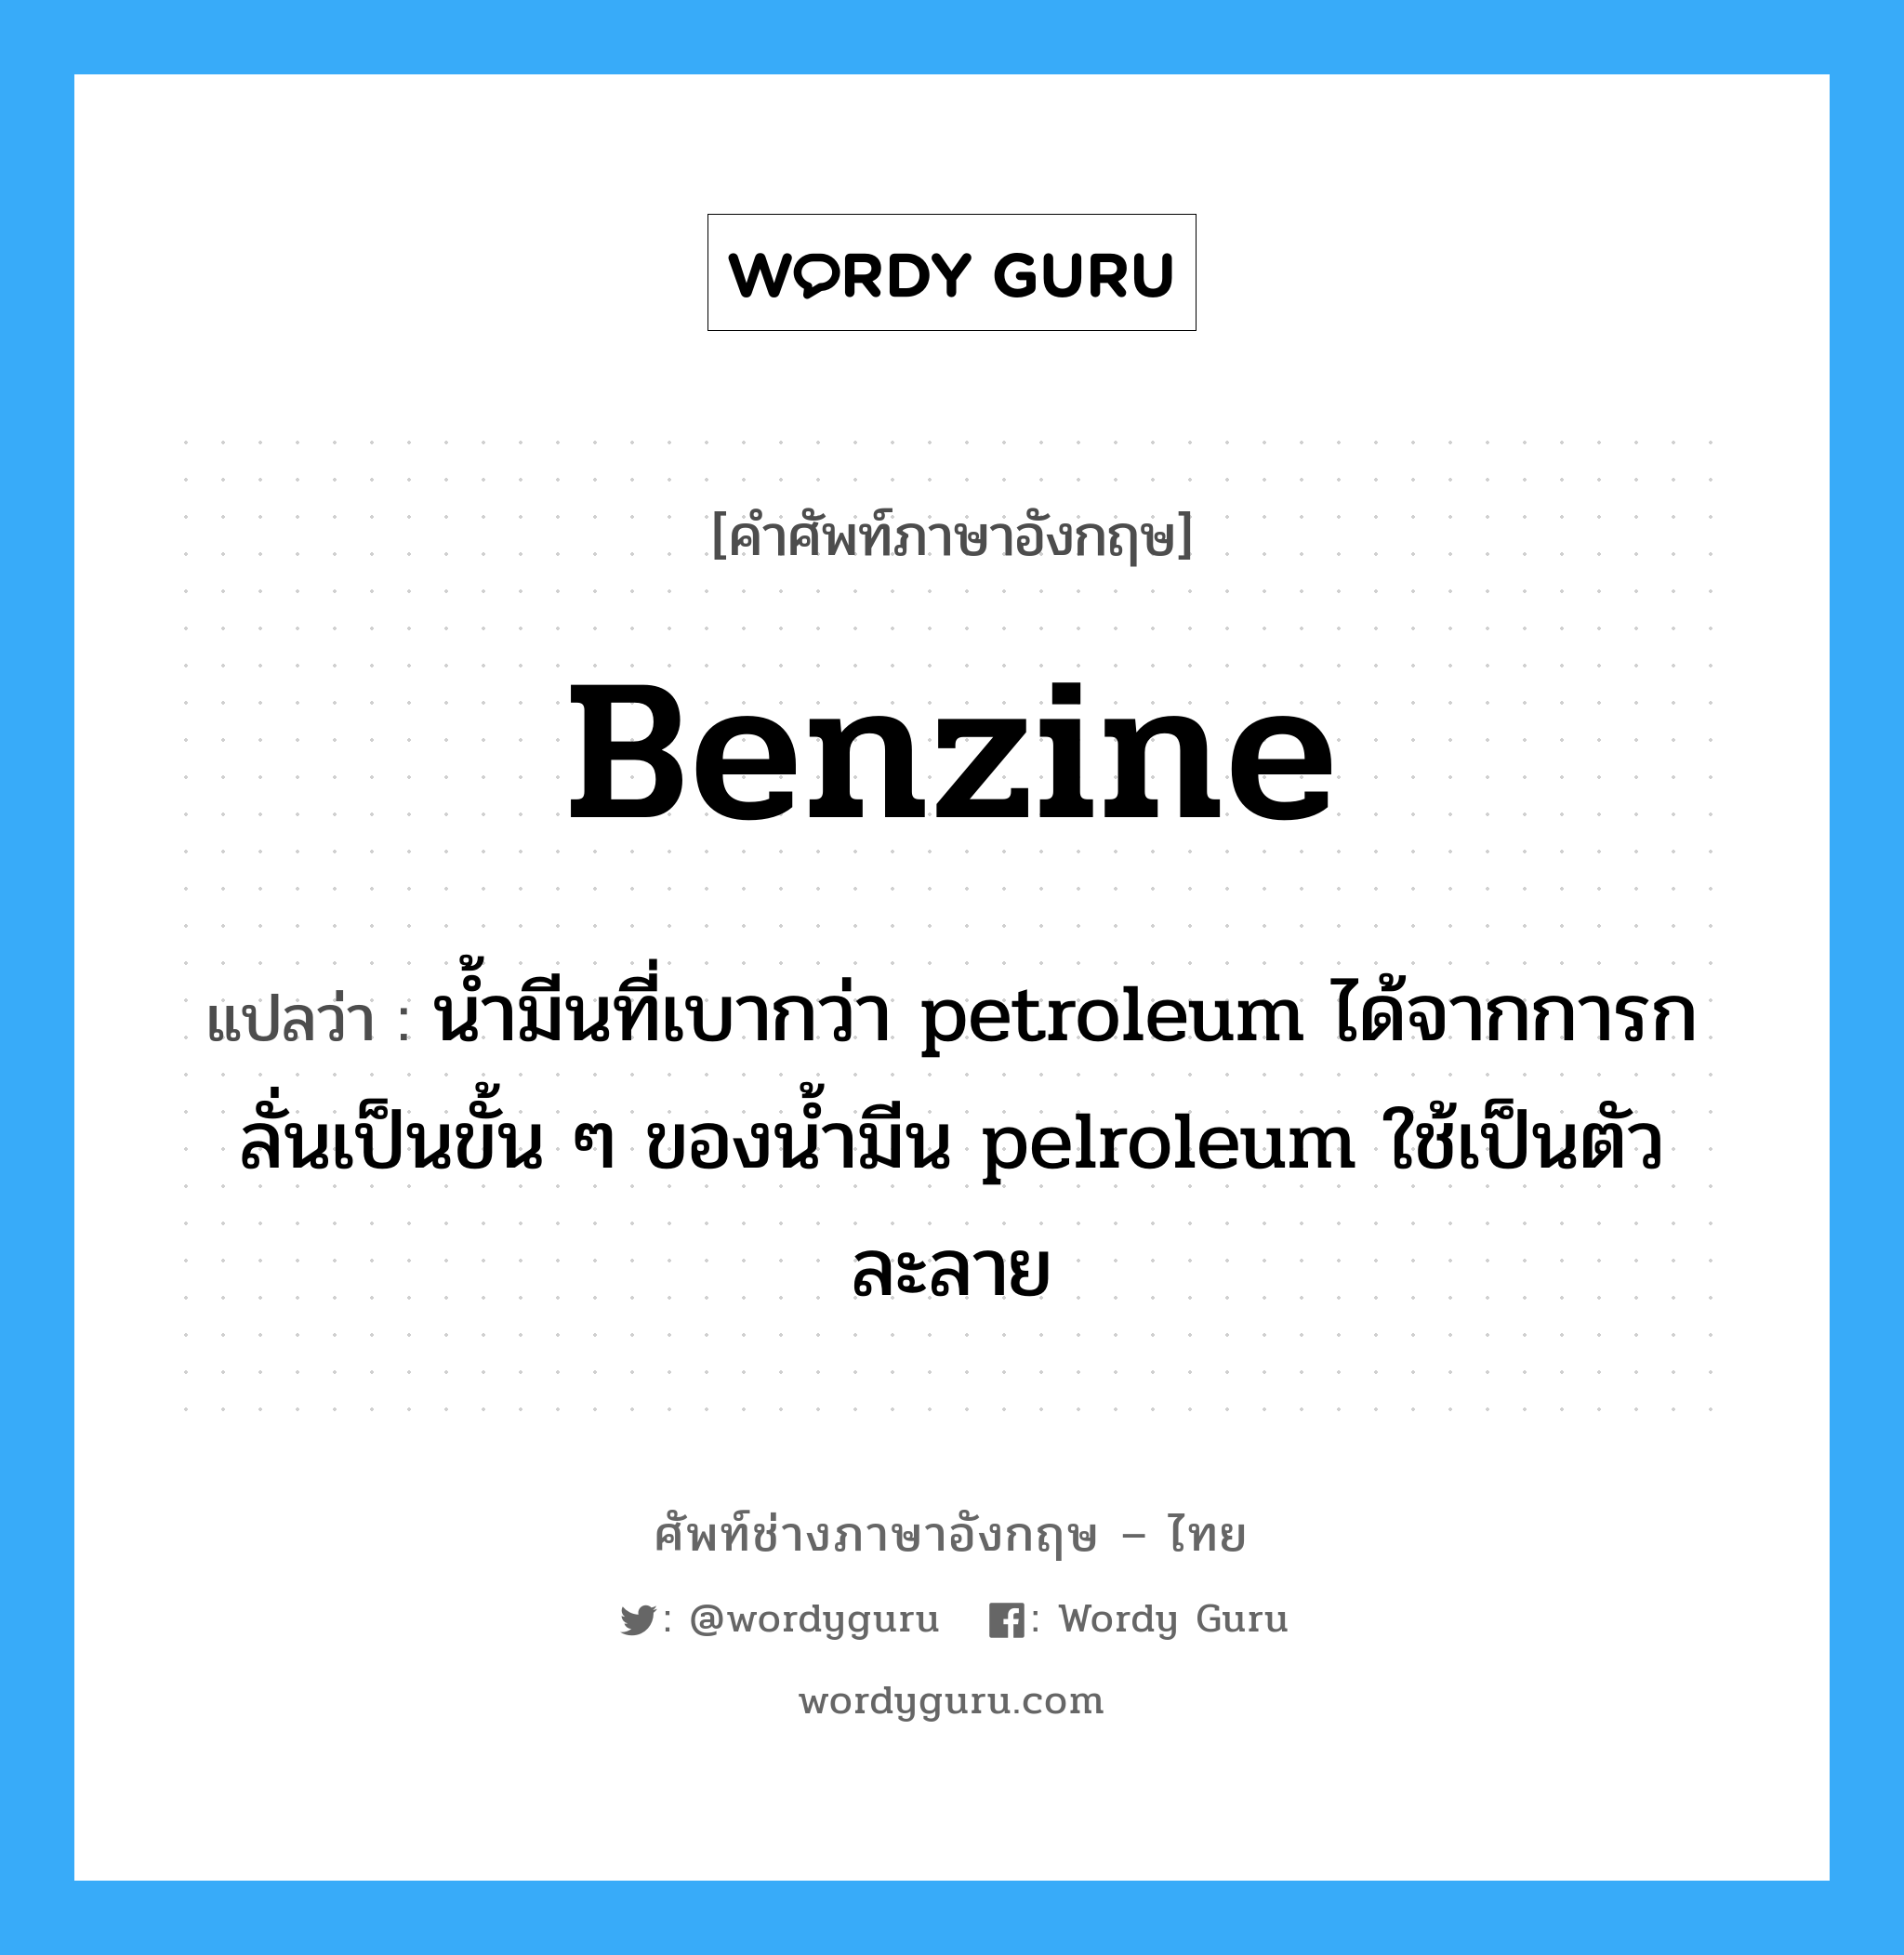 benzine แปลว่า?, คำศัพท์ช่างภาษาอังกฤษ - ไทย benzine คำศัพท์ภาษาอังกฤษ benzine แปลว่า น้ำมีนที่เบากว่า petroleum ได้จากการกลั่นเป็นขั้น ๆ ของน้ำมีน pelroleum ใช้เป็นตัวละลาย